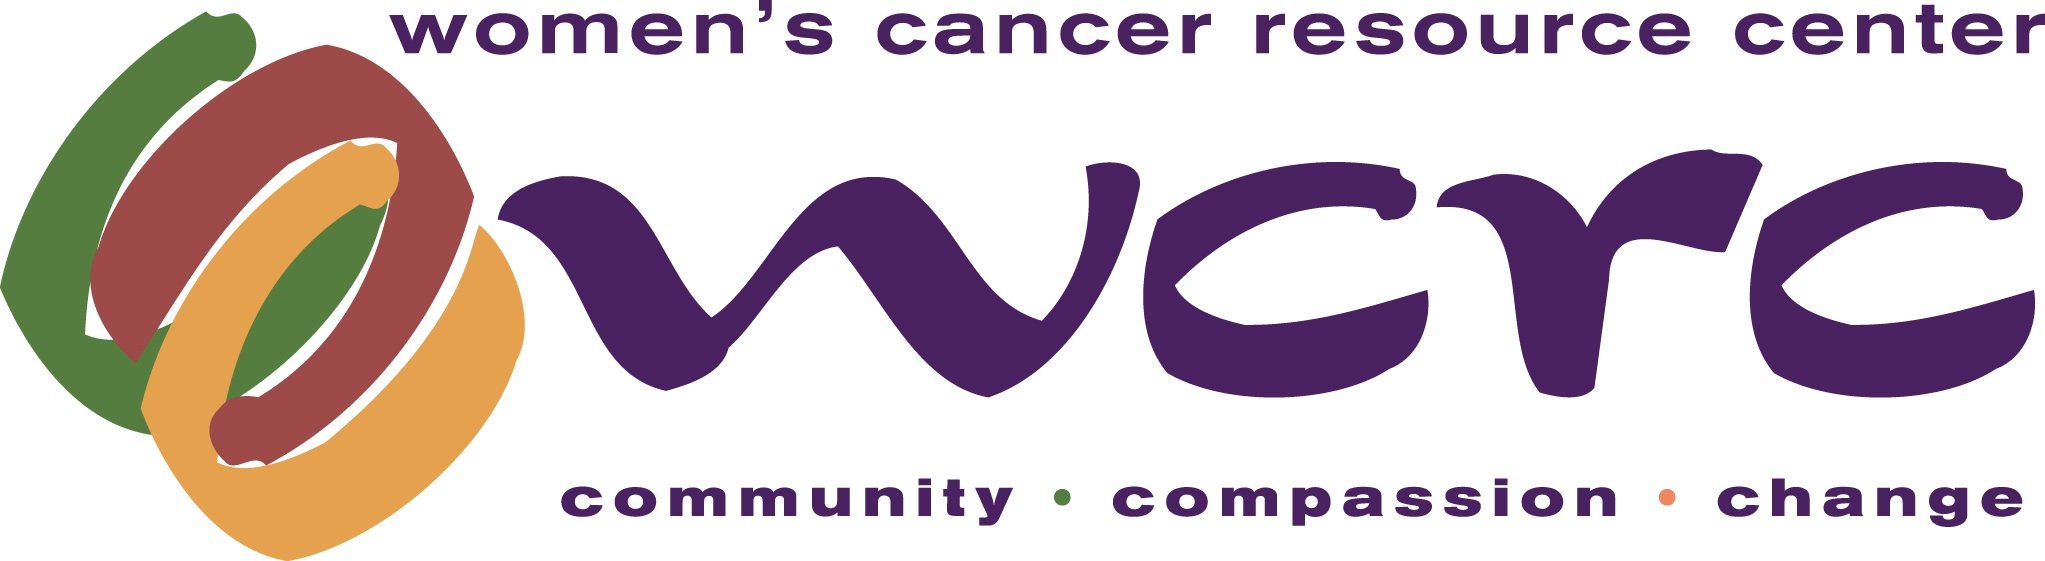 Women's Cancer Resourwce Center.jpg